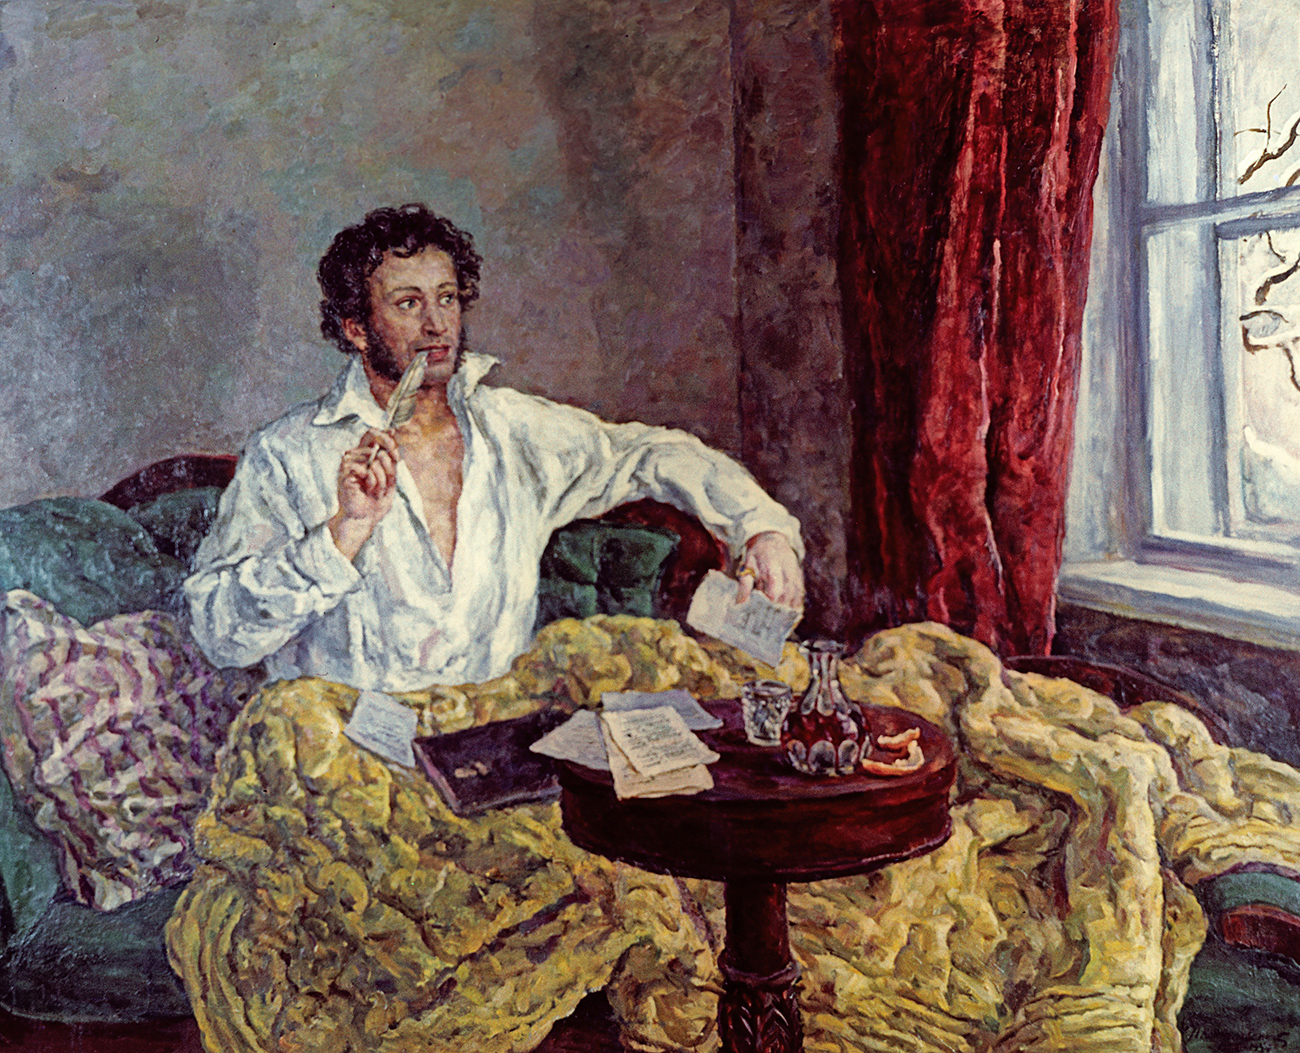 Рерподукция картины художника Петра Кончаловского "А. С. Пушкин" (1932 г.)